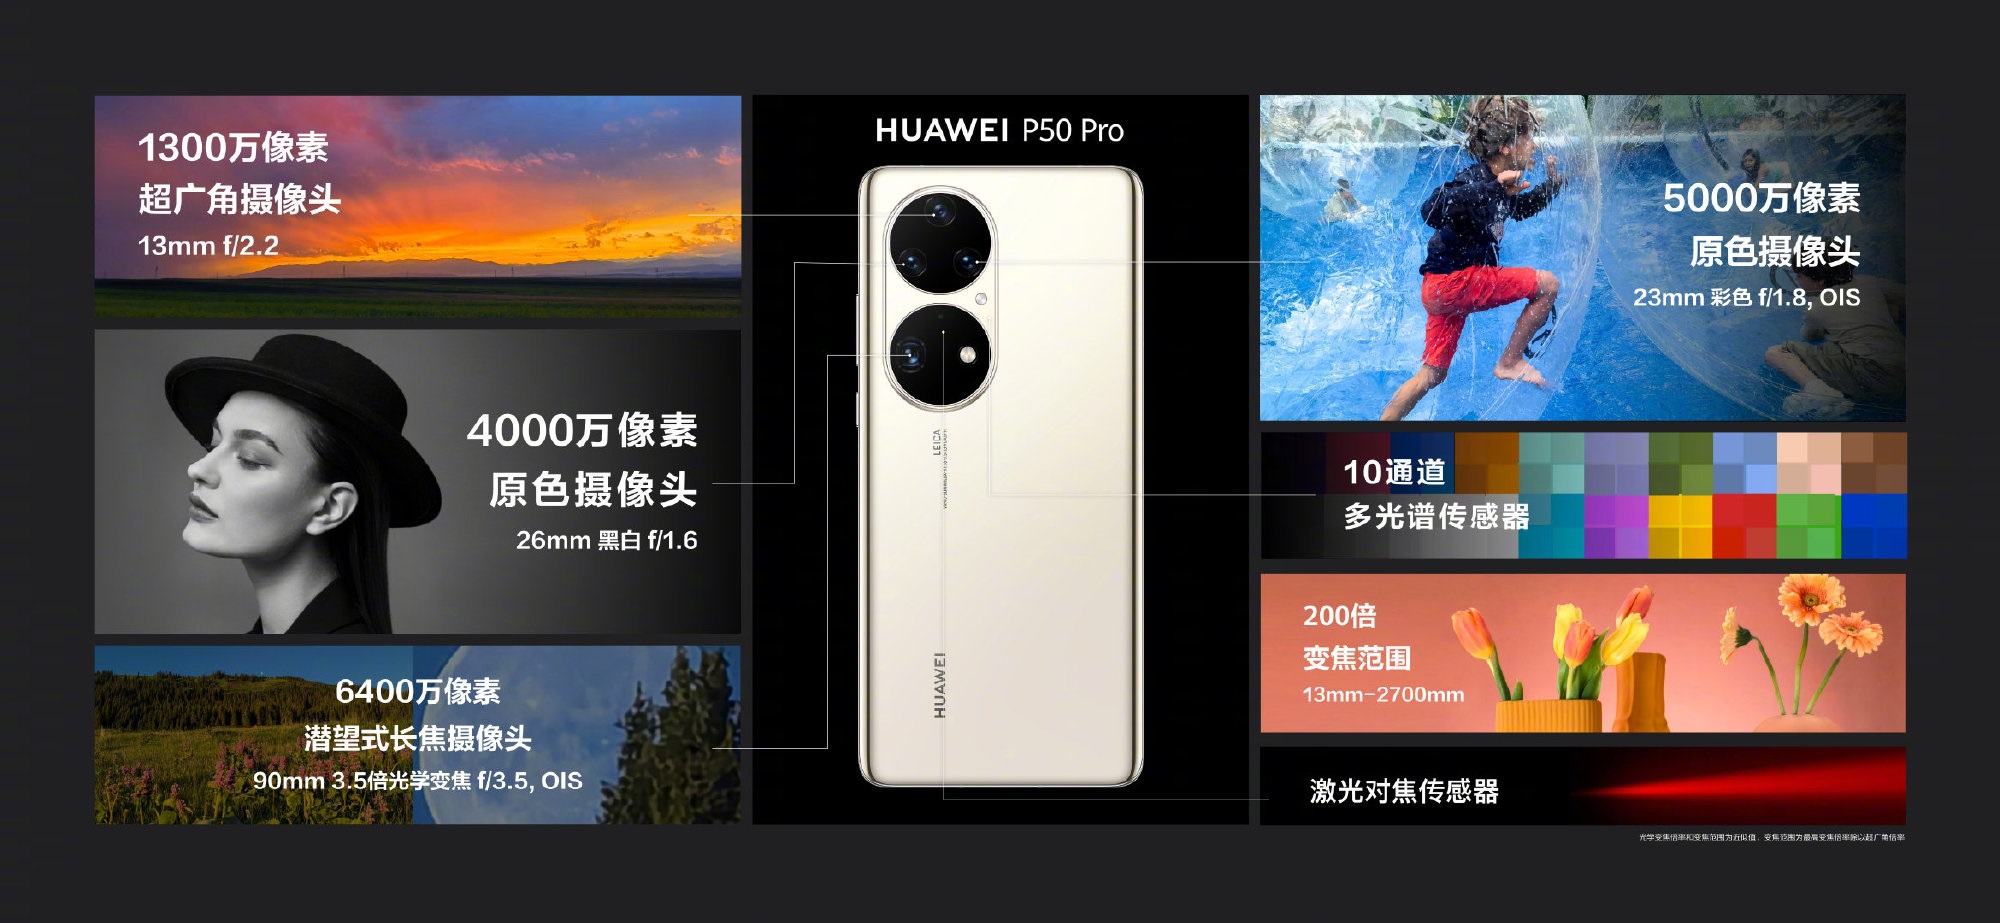 Huawei P50 Pro cameras c